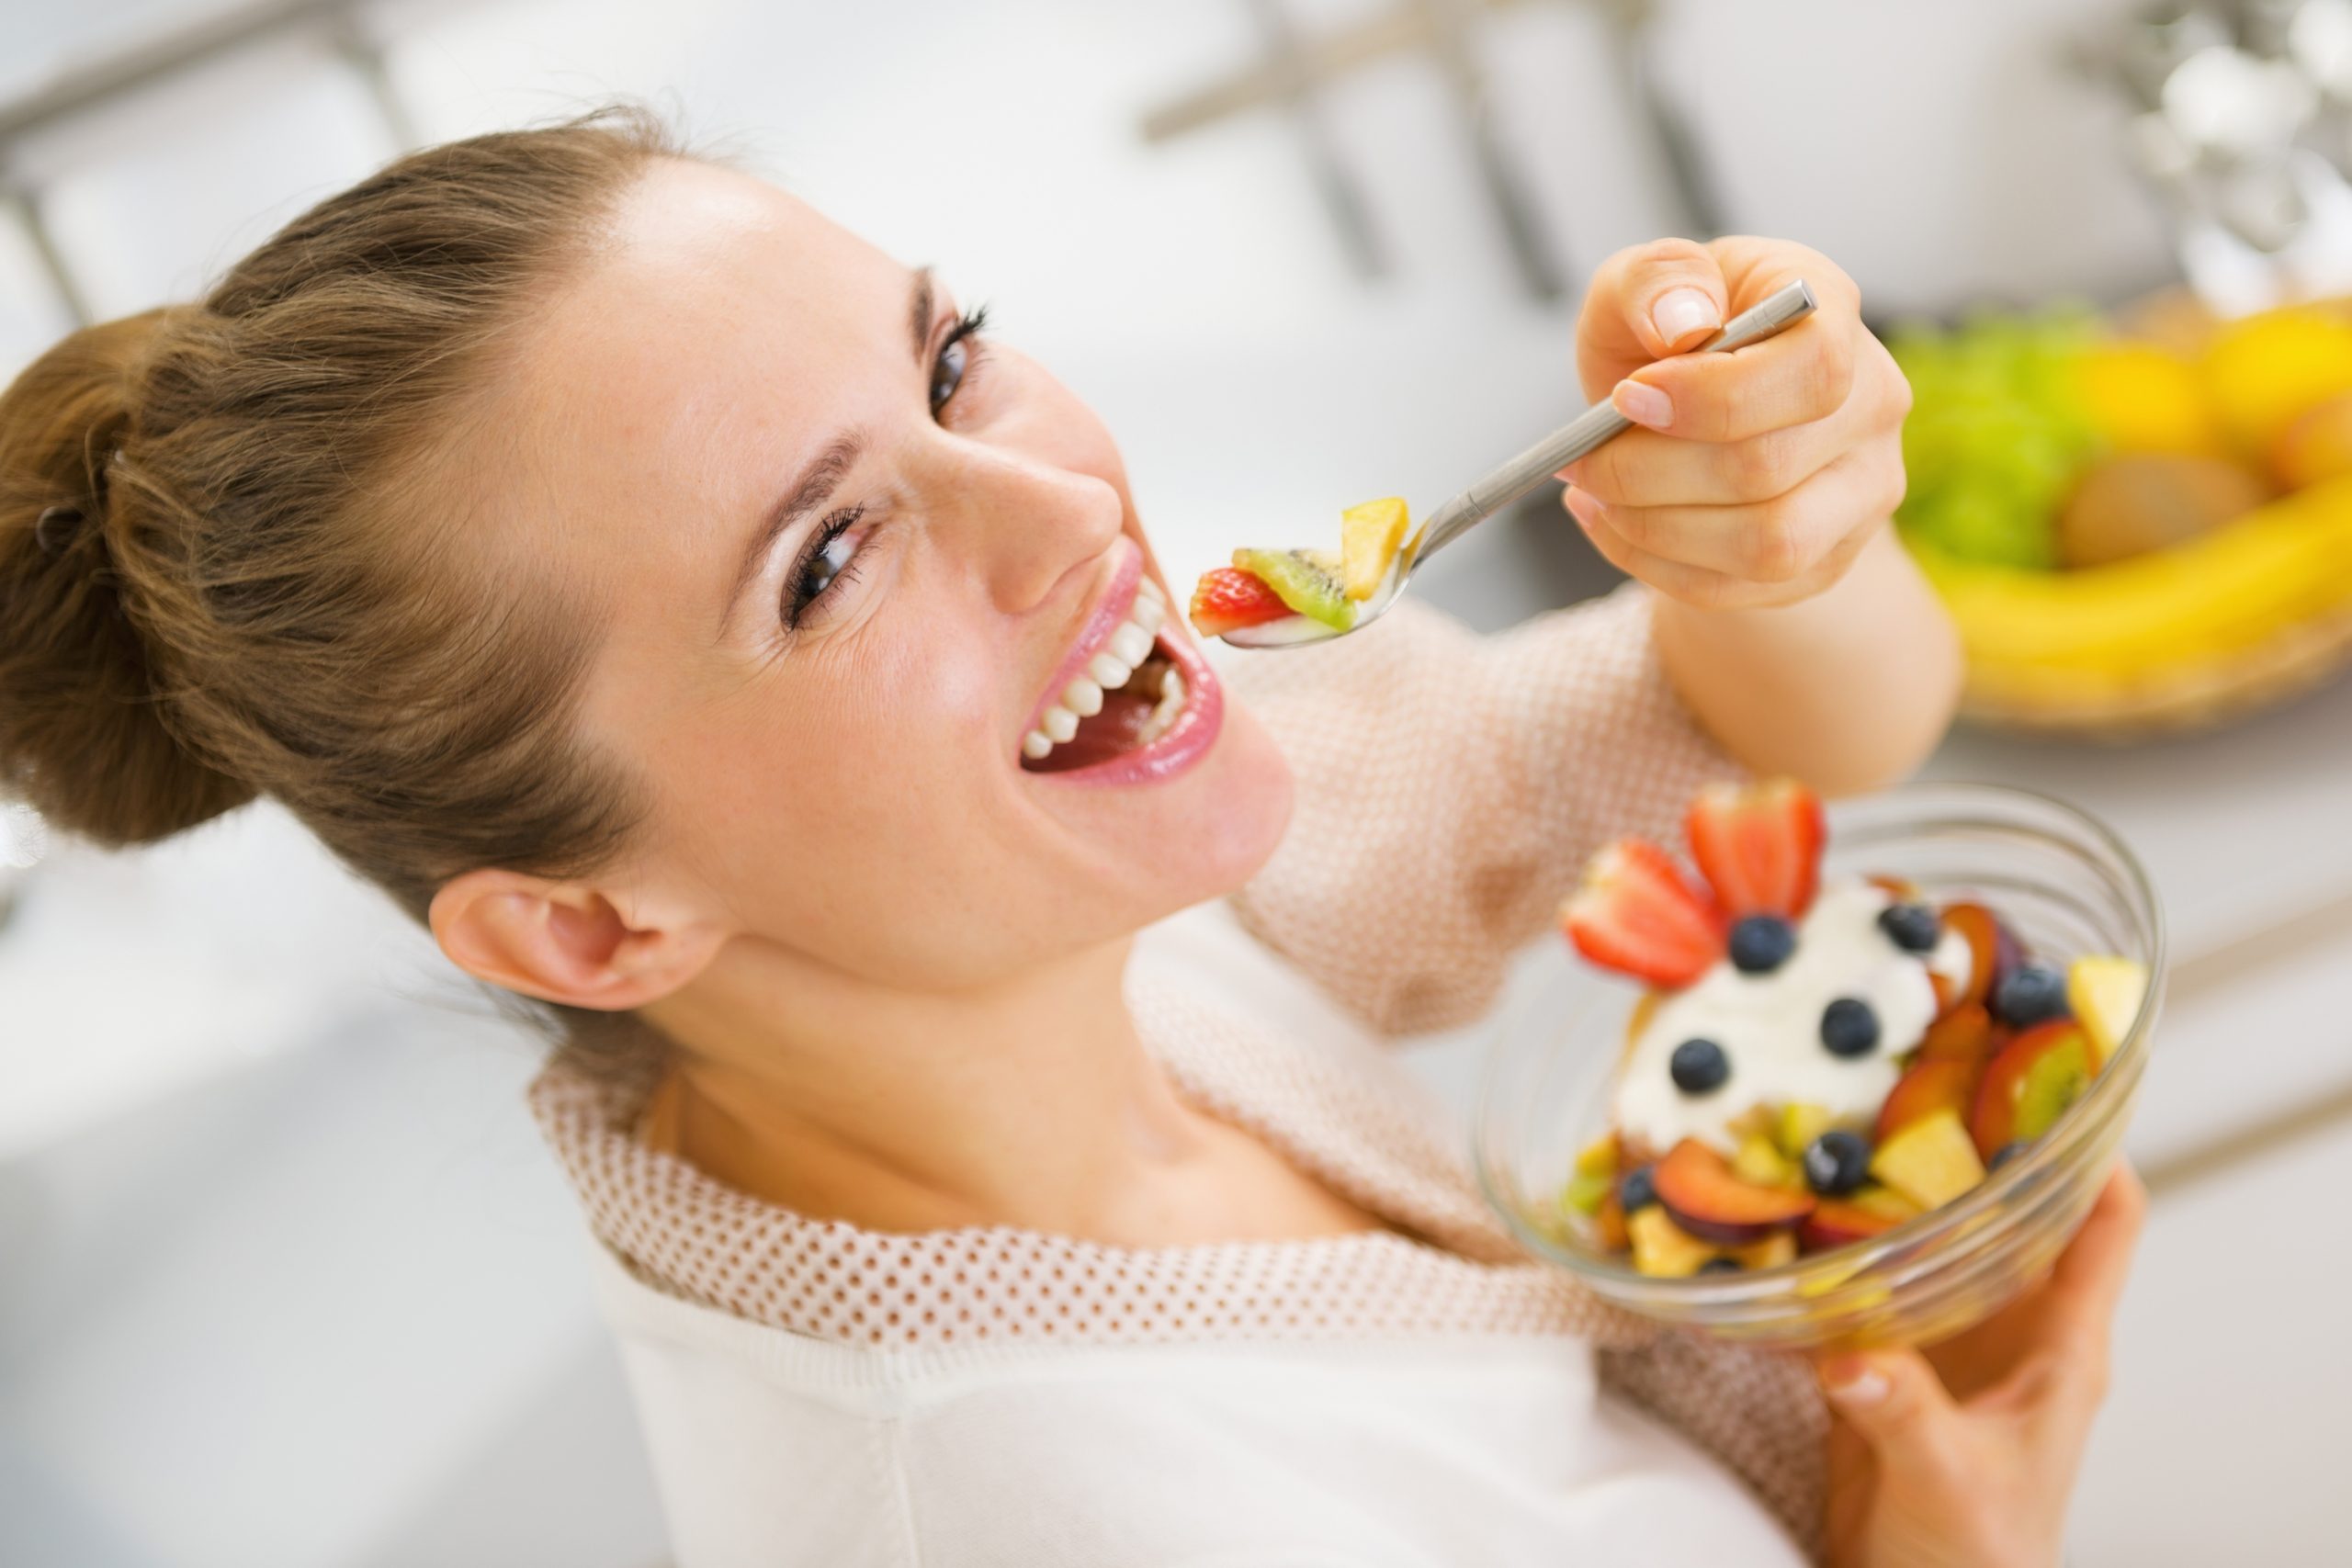 Cosa sai sull’alimentazione sana negli adulti? [QUIZ]